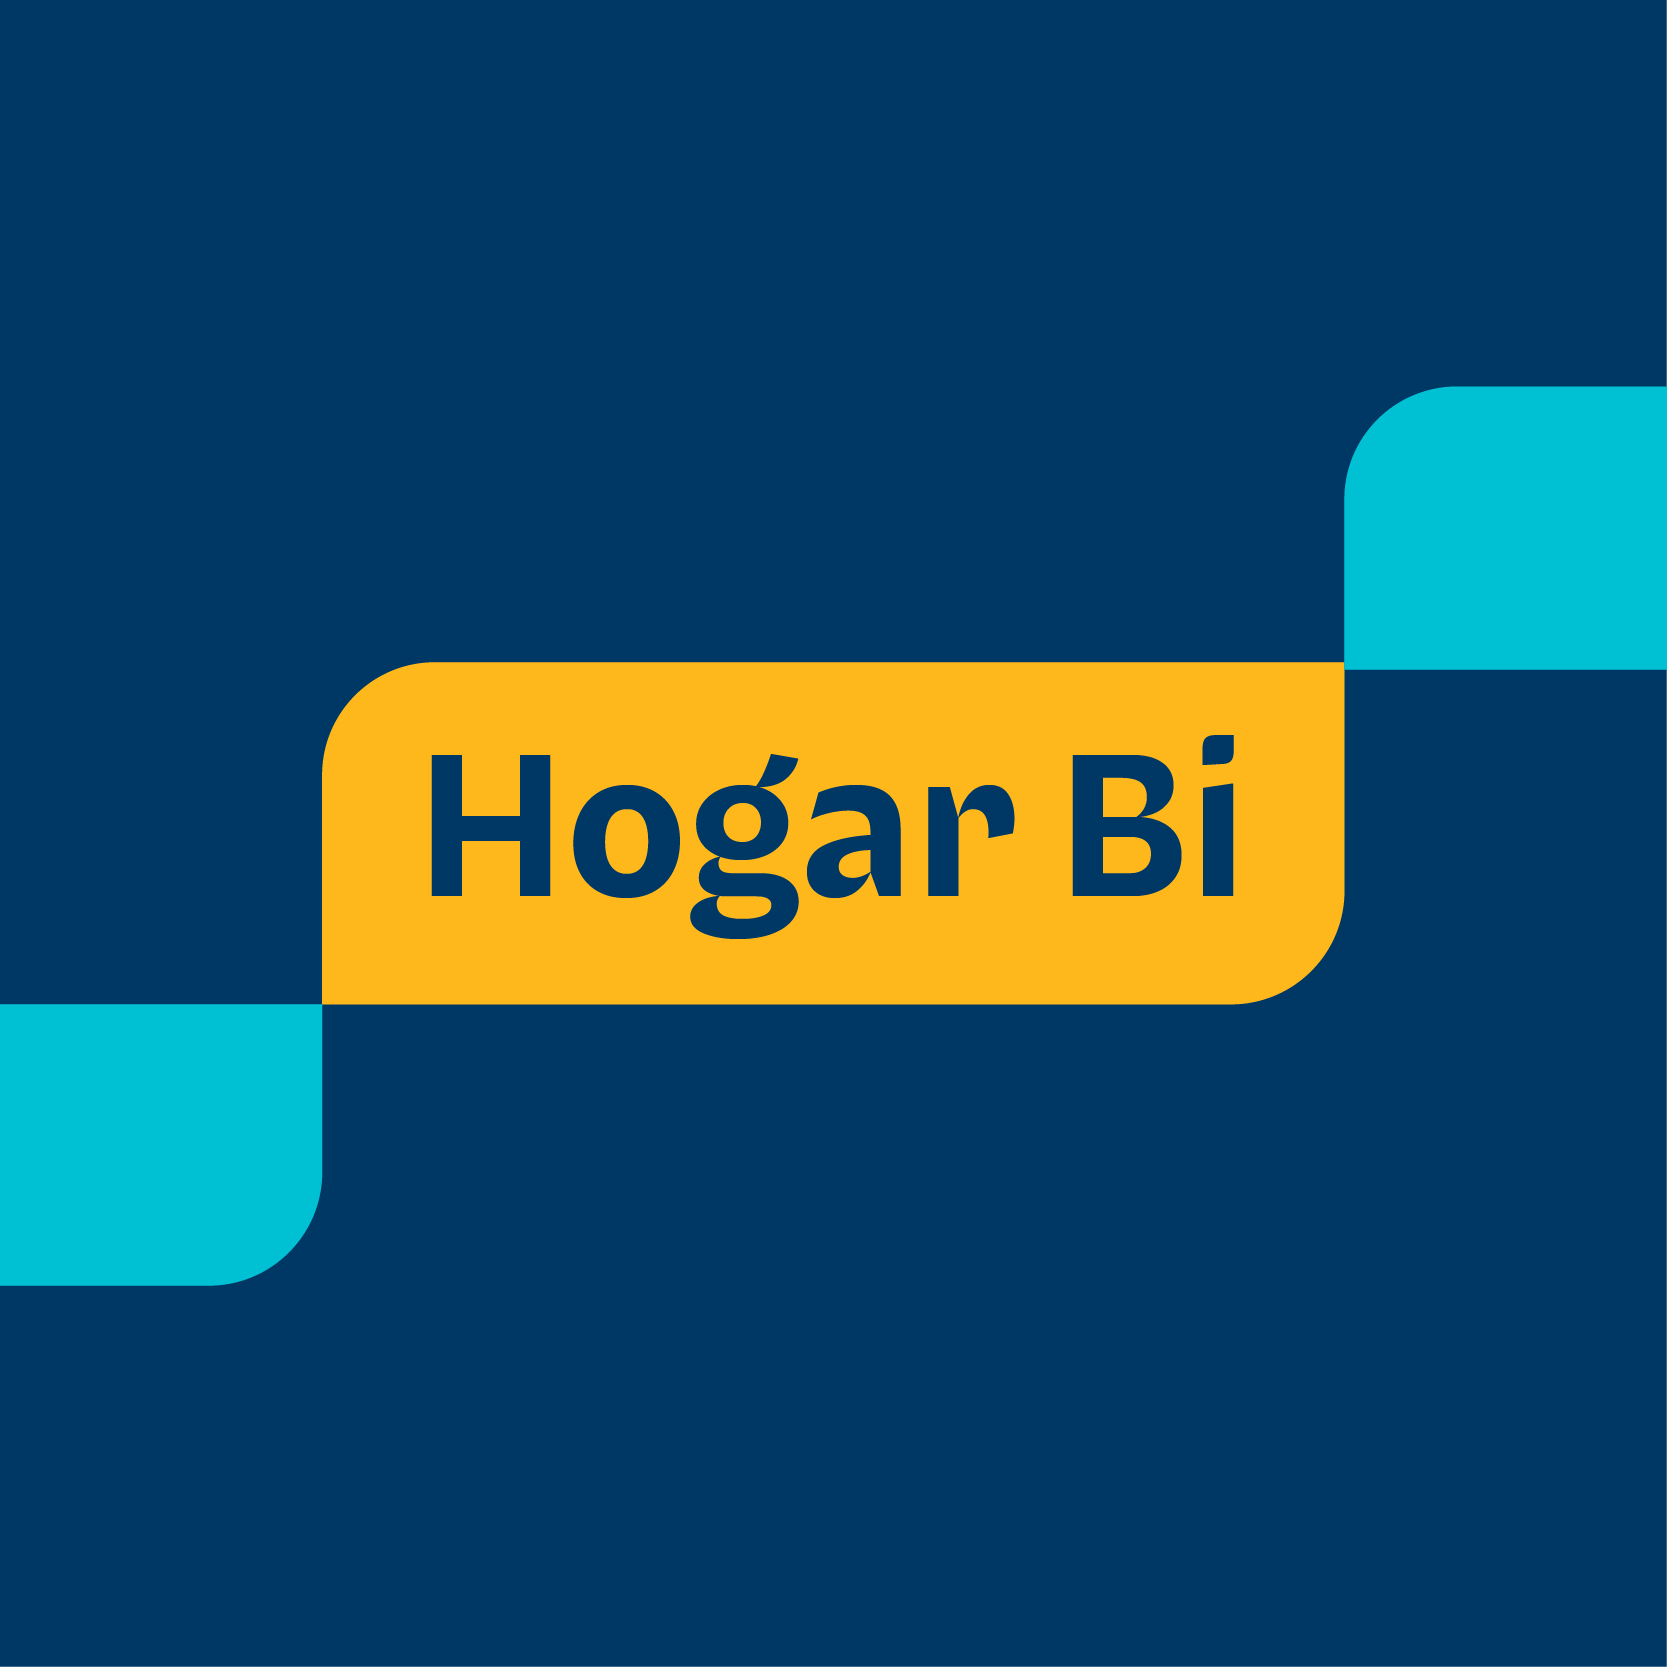 Hogar Bi